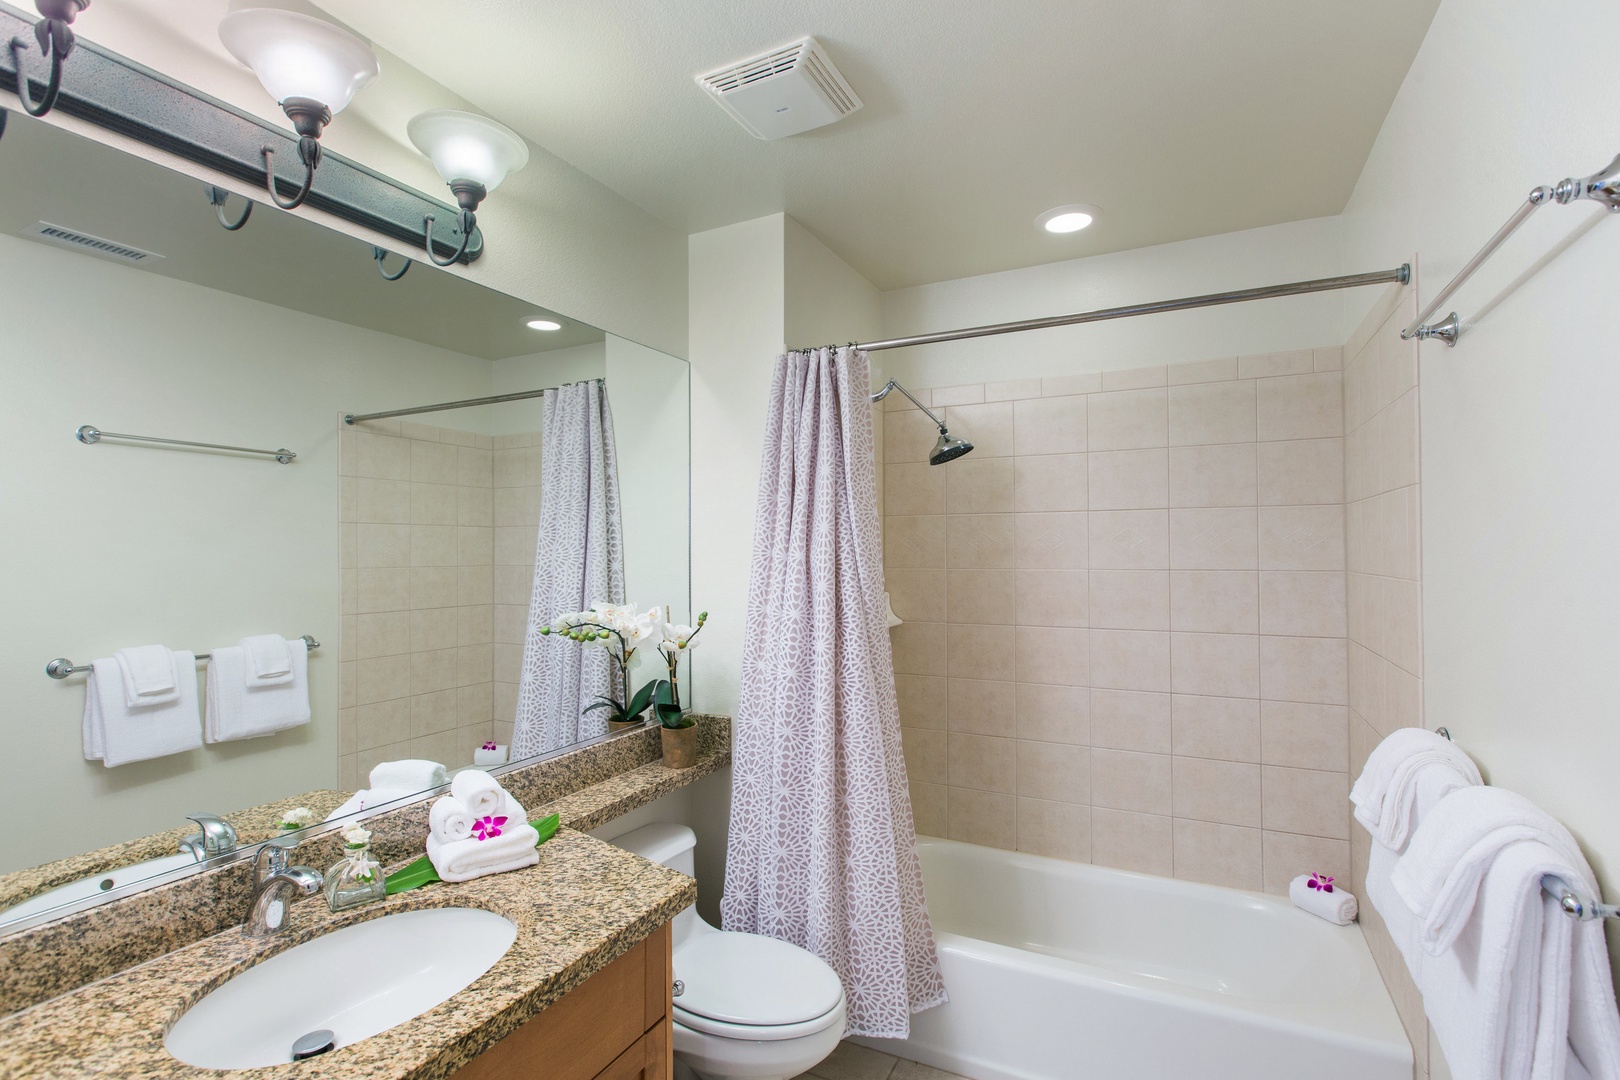 Honolulu Vacation Rentals, Ohana Kai - Second-floor full bathroom for the twin bedroom and queen bedroom.